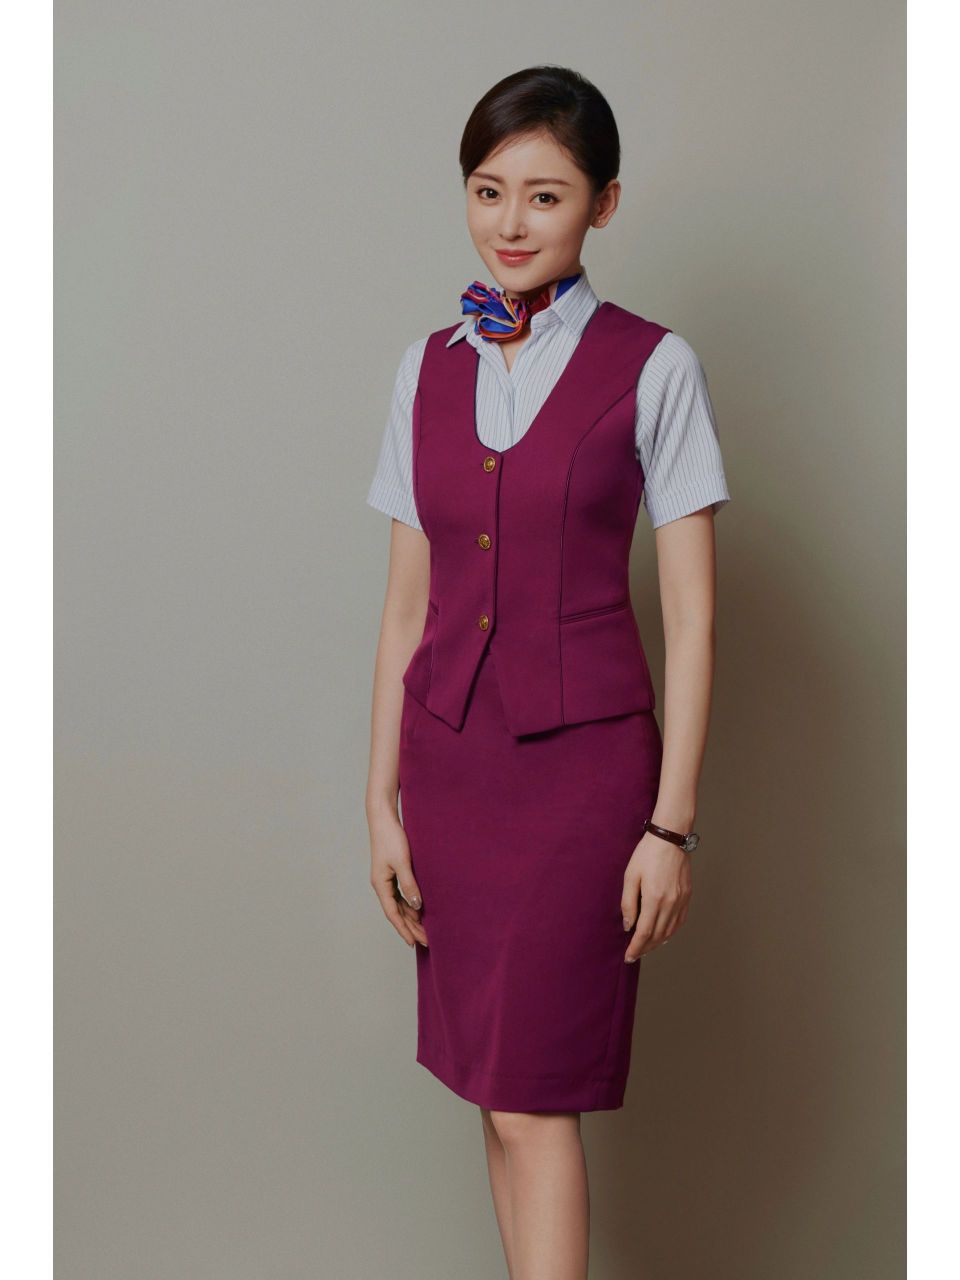 中国机长原型人物空姐图片